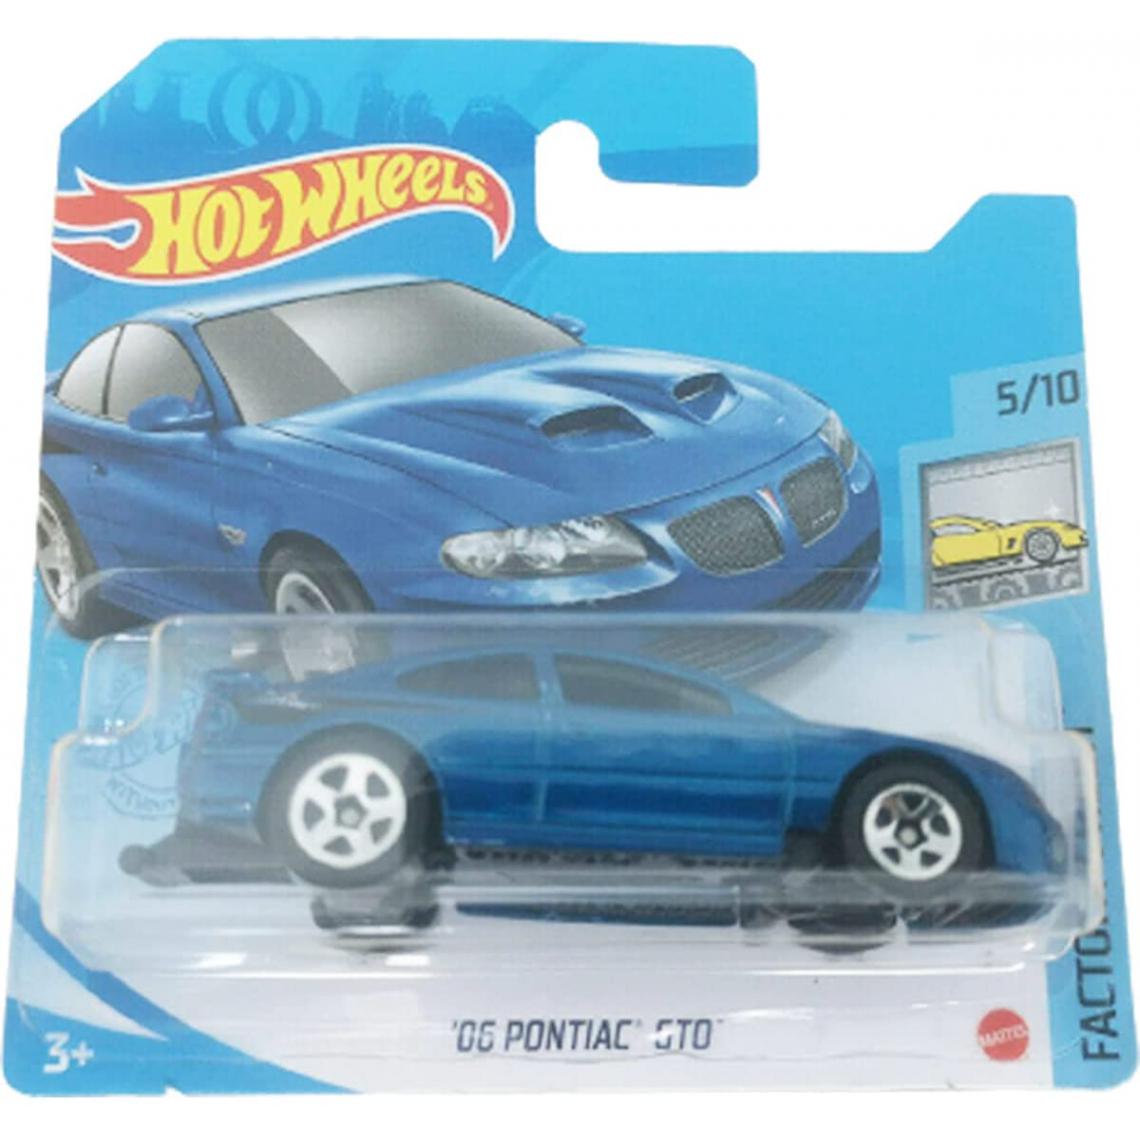 Hot Wheels - véhicule Pontiac GTO Factory Fresh 5/10 - Voiture de collection miniature